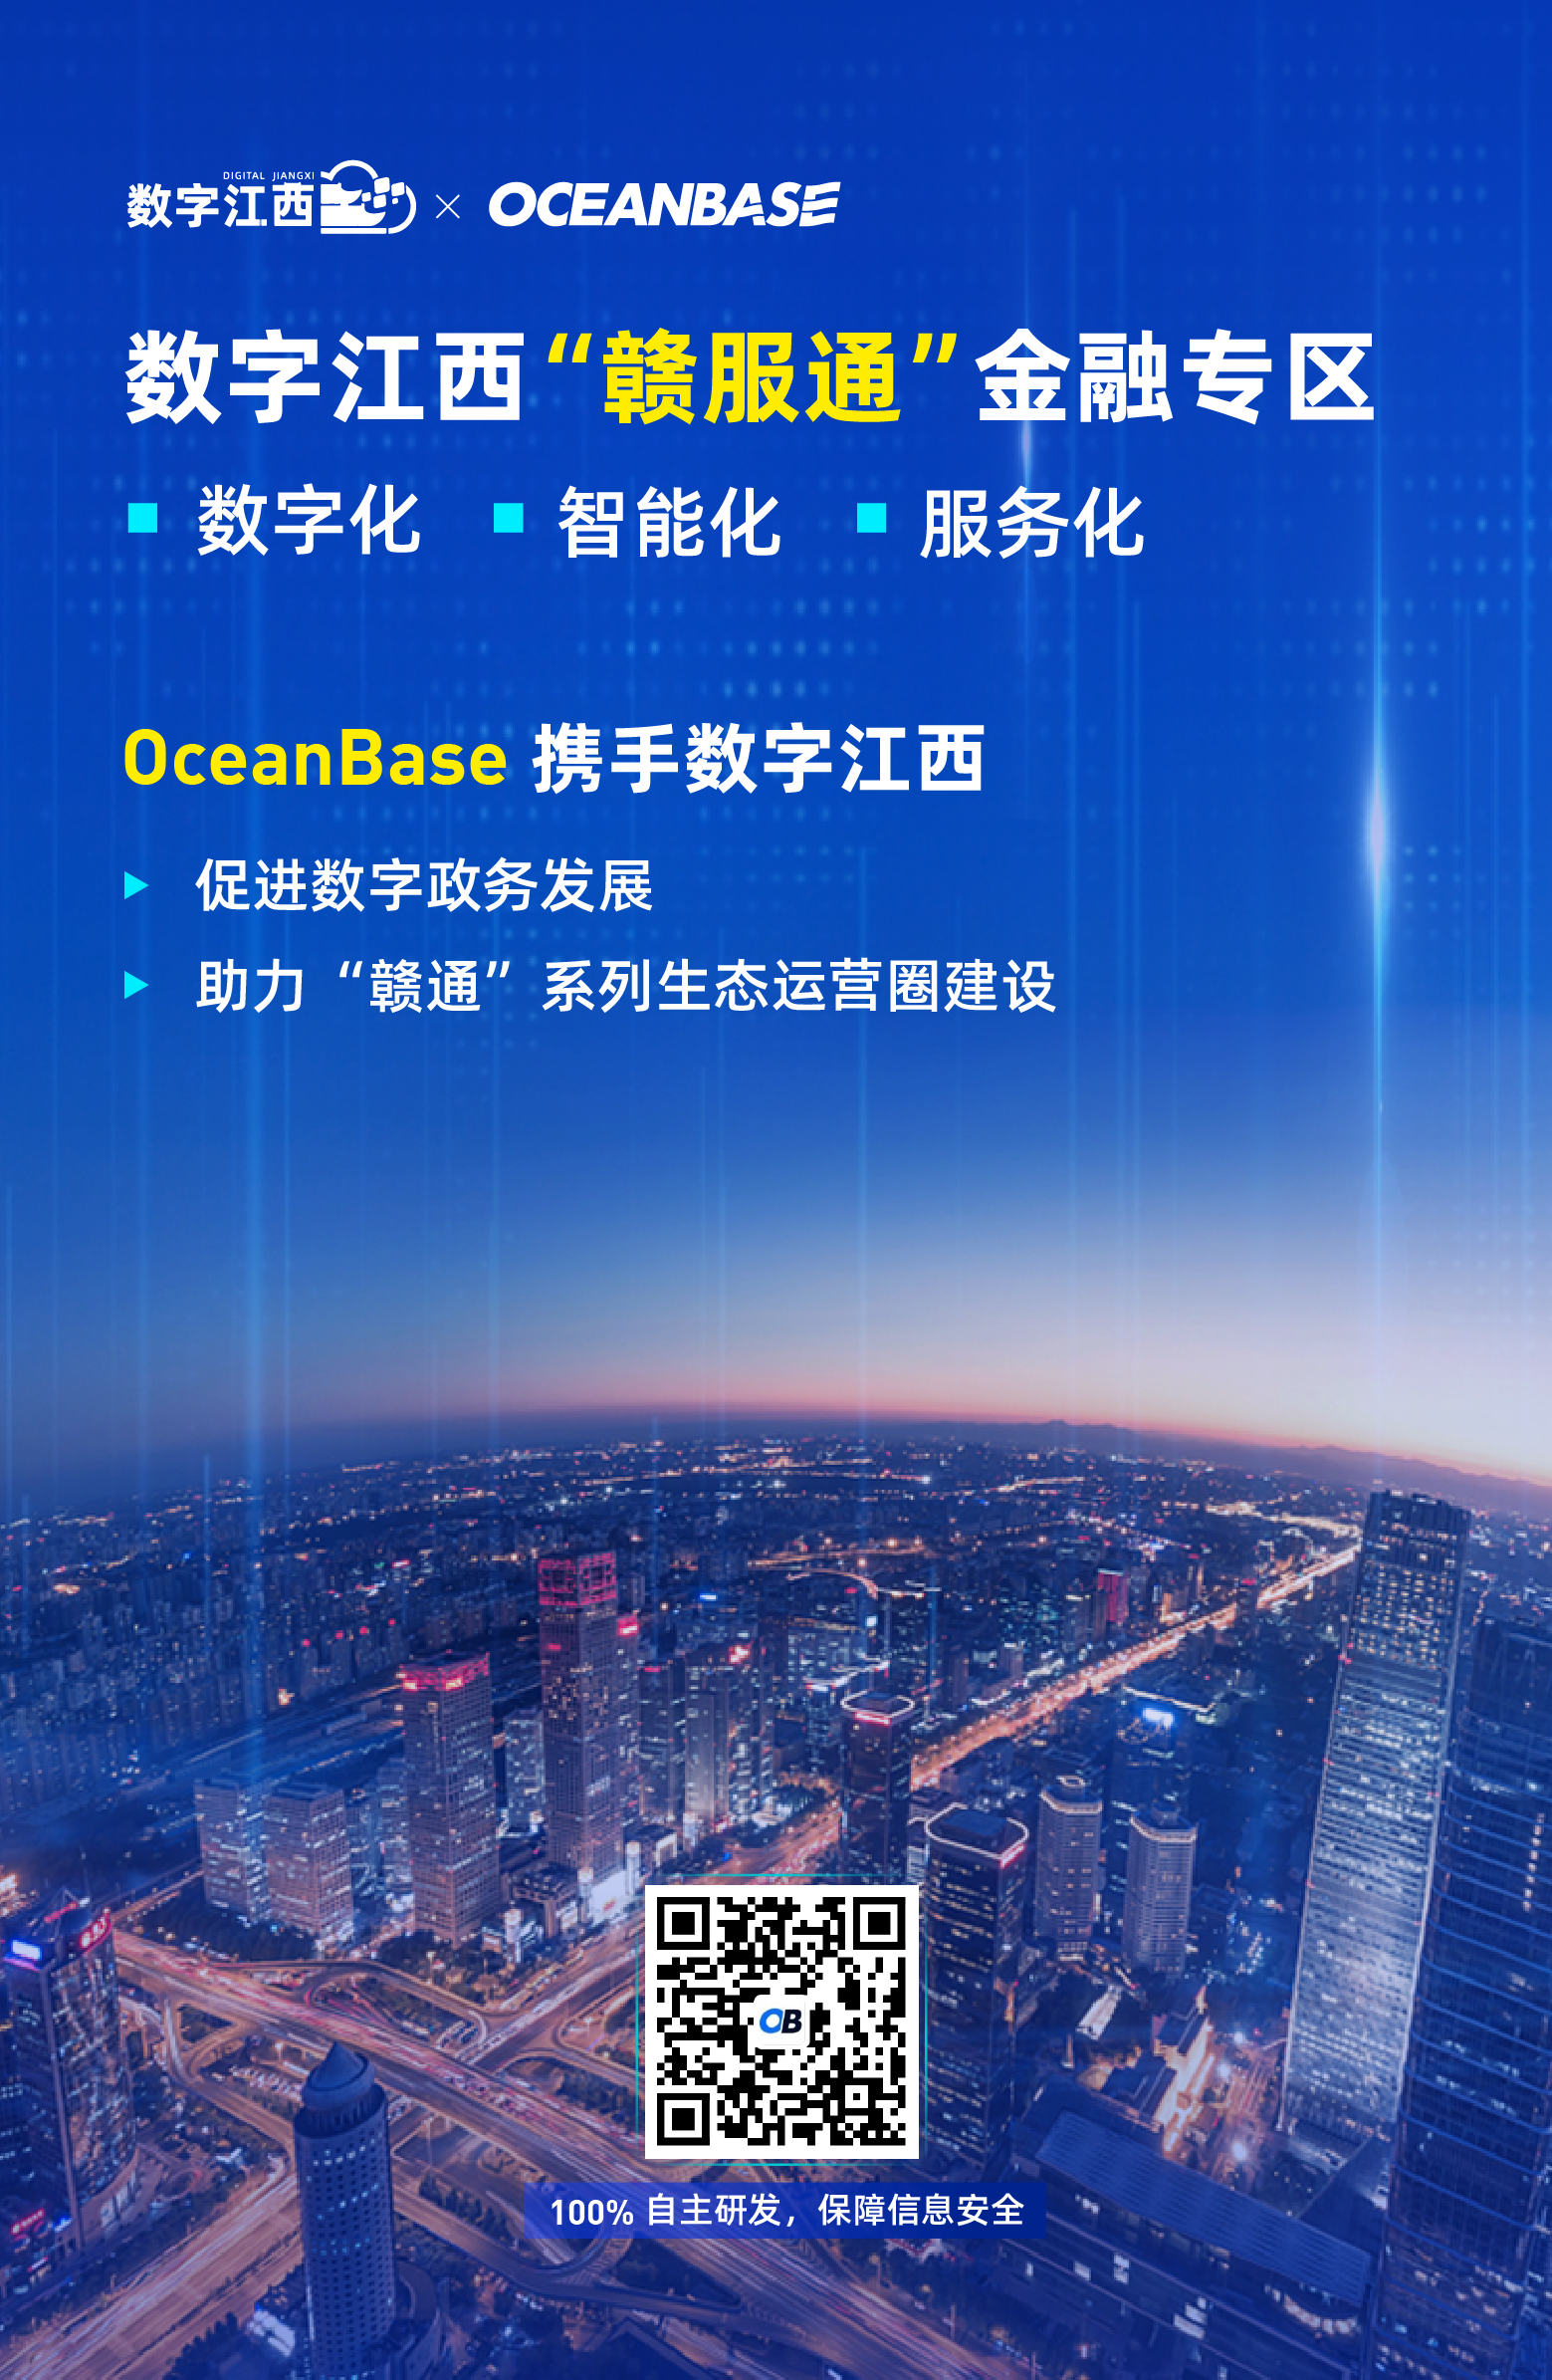 数字江西 “赣服通” 基于 OceanBase 实现业务创新和服务升级